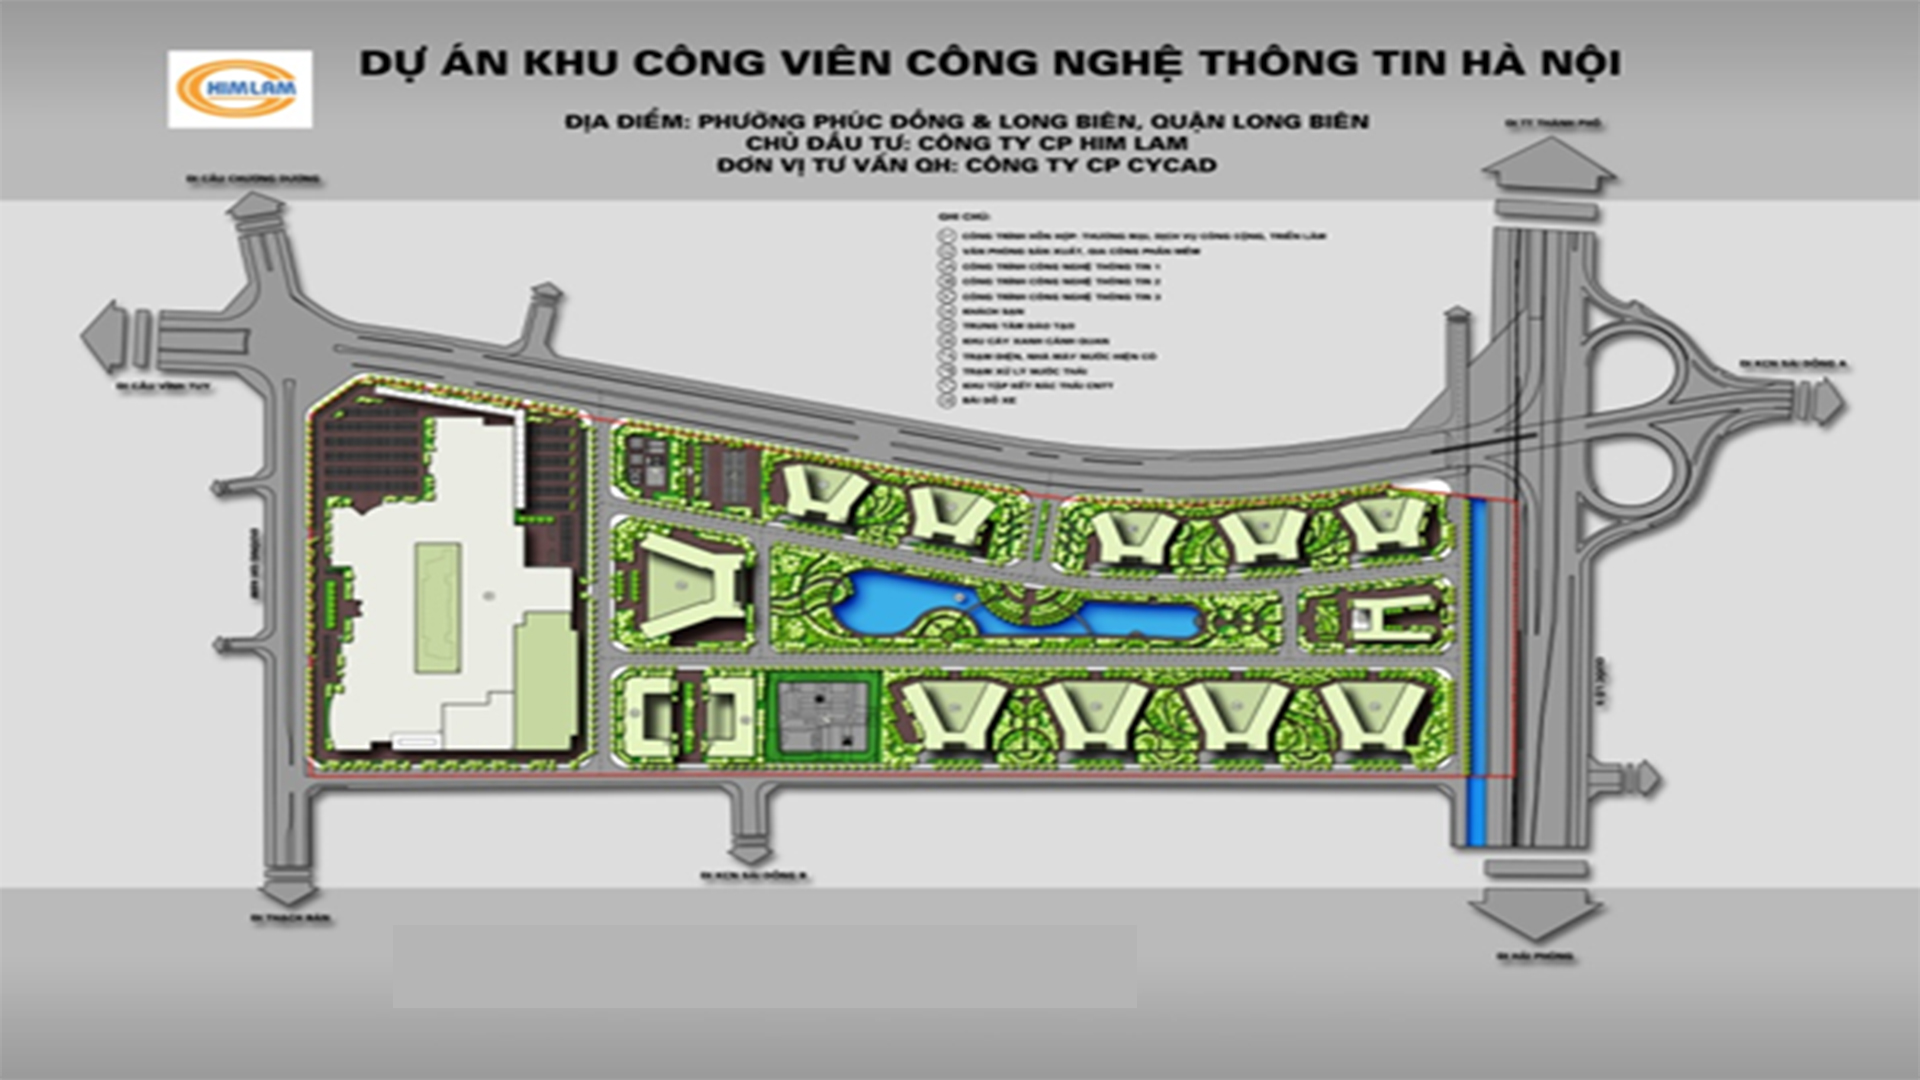 Dự án KHU CÔNG VIÊN CÔNG NGHỆ THÔNG TIN HÀ NỘI Quận Long Biên